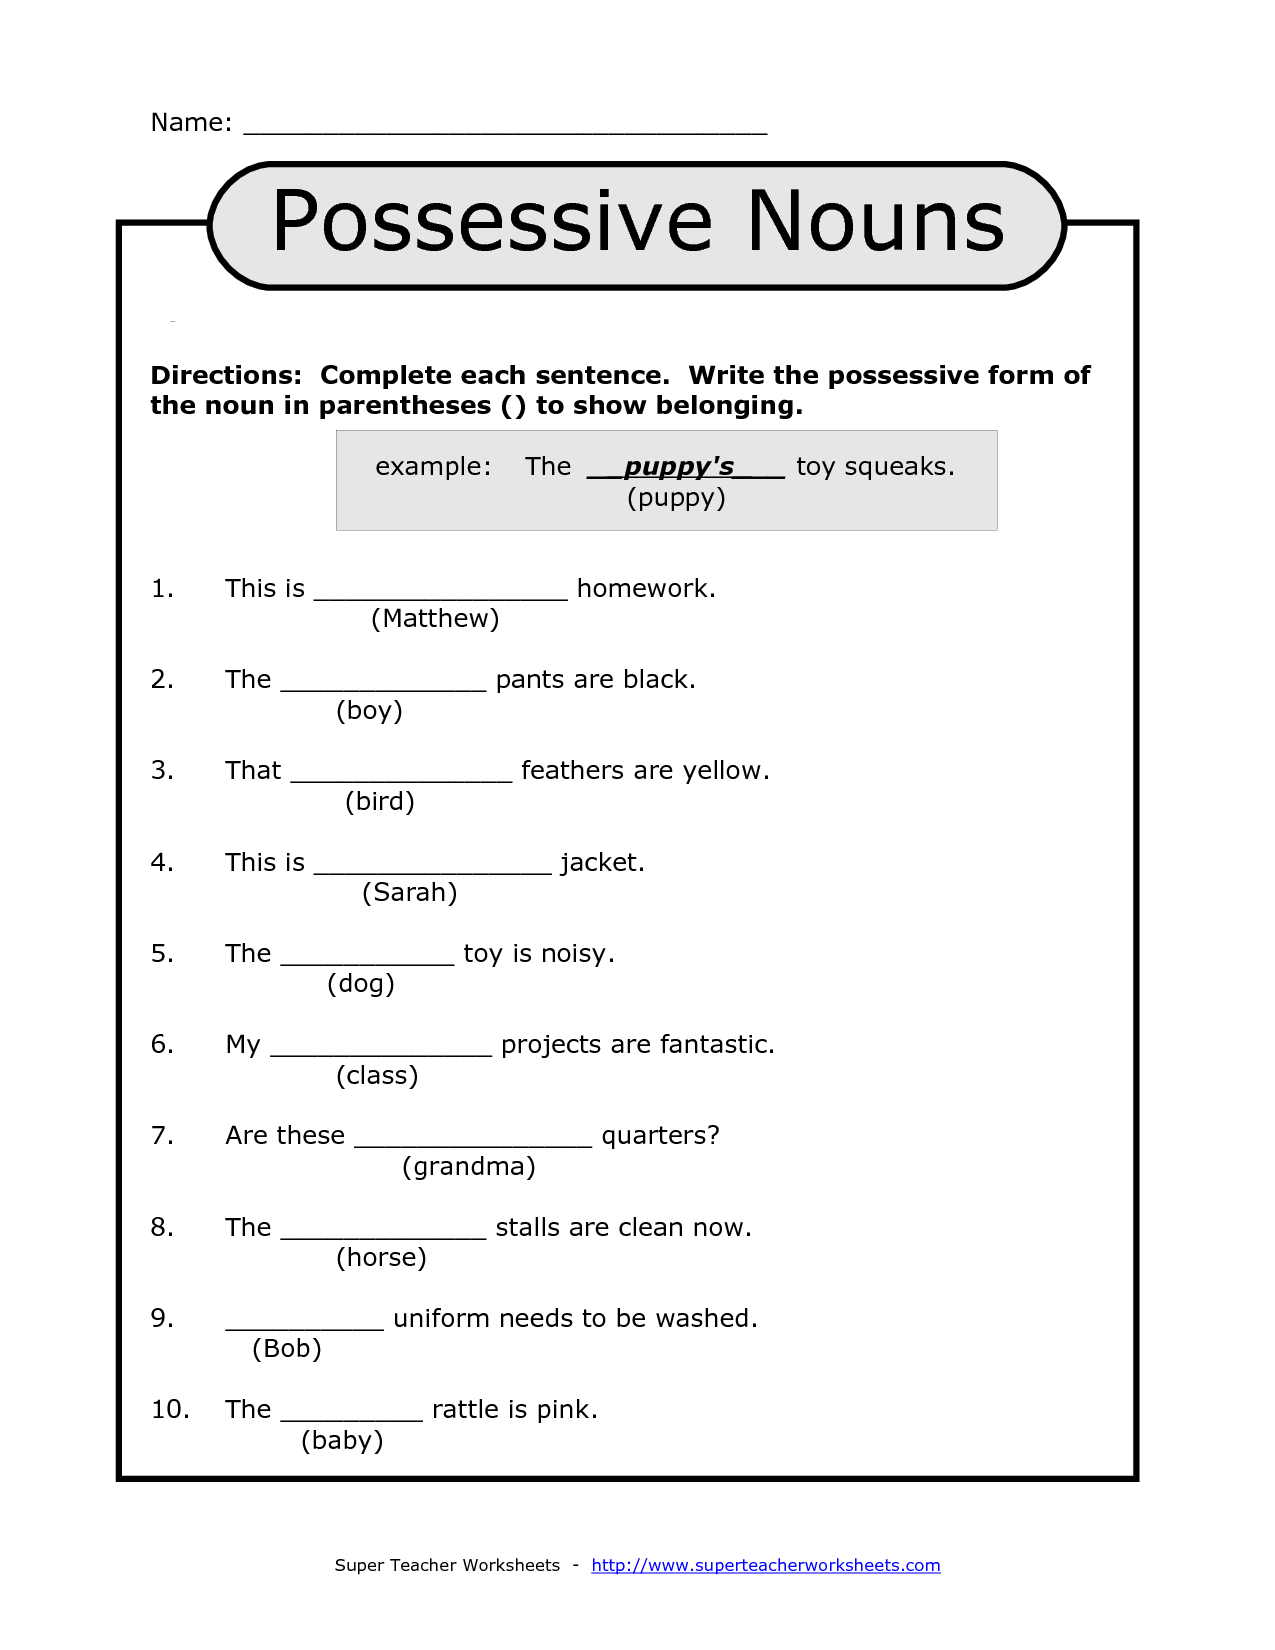 Worksheet On Possessive Pronouns For Grade 1